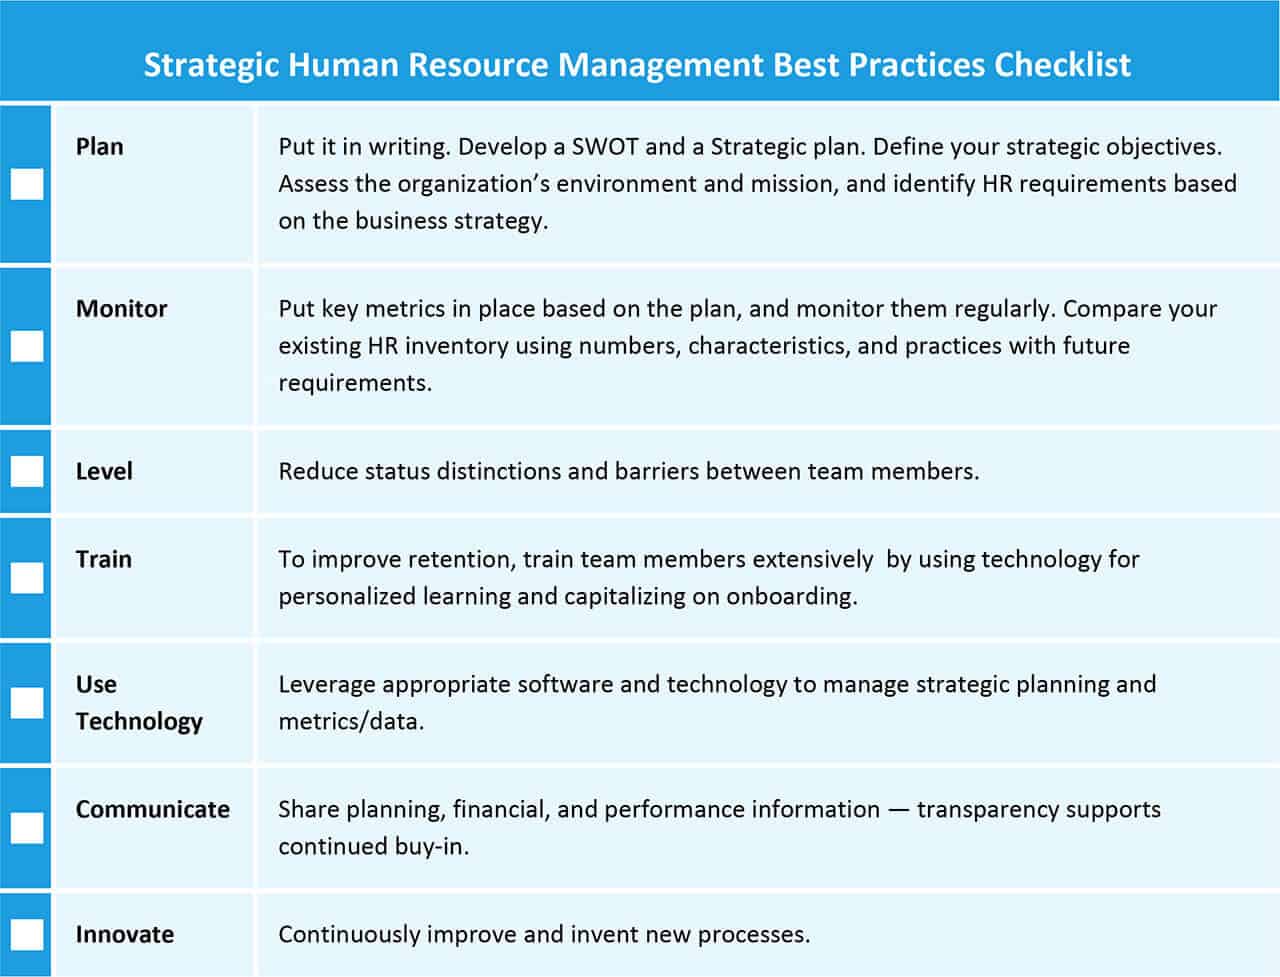 Strategic Human Resource Management Best Practices Checklist